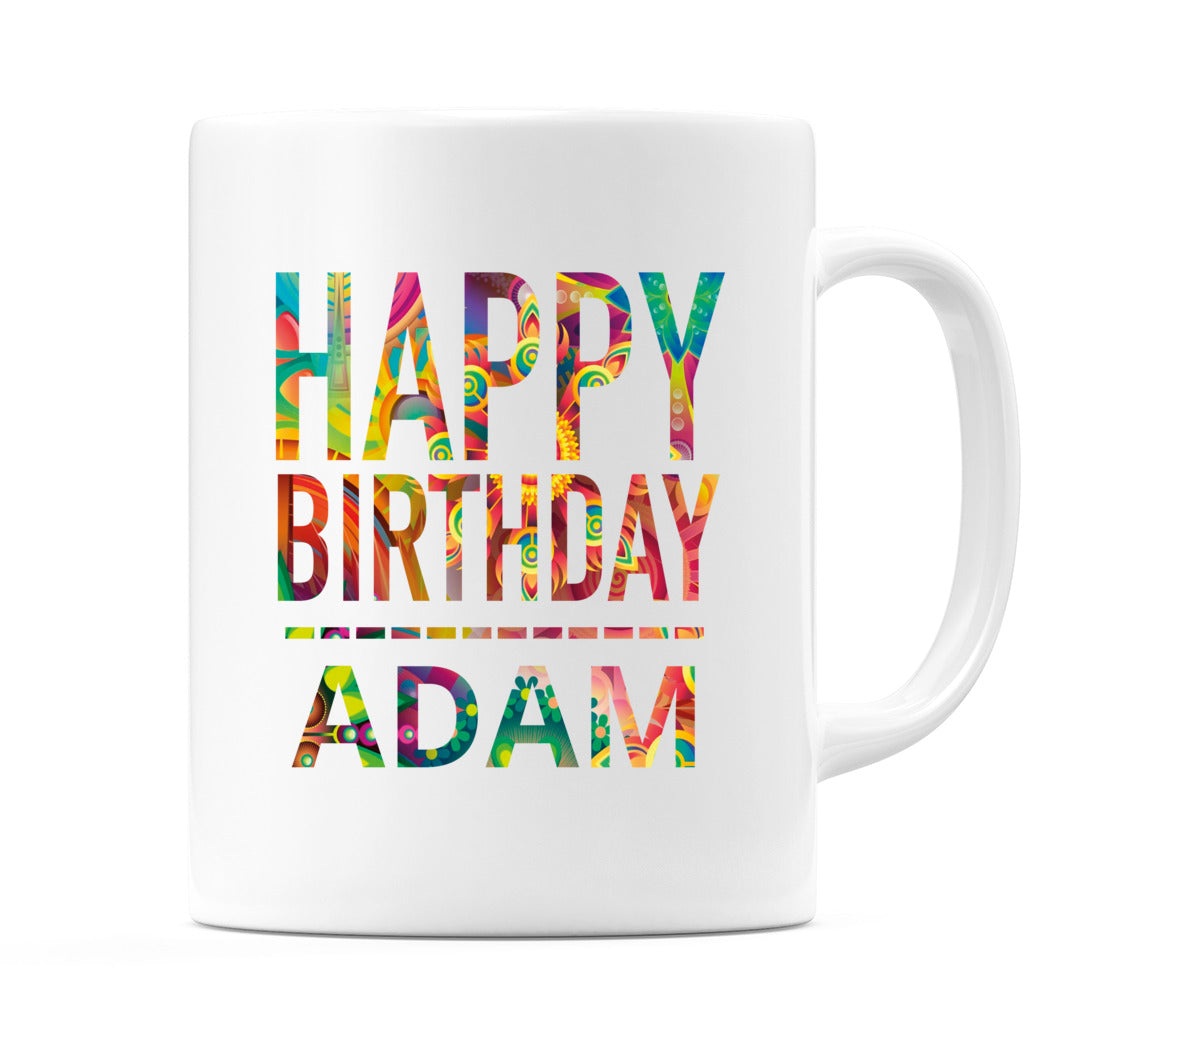 Happy Birthday Adam (Tie Dye Effect) Mug Cup by WeDoMugs